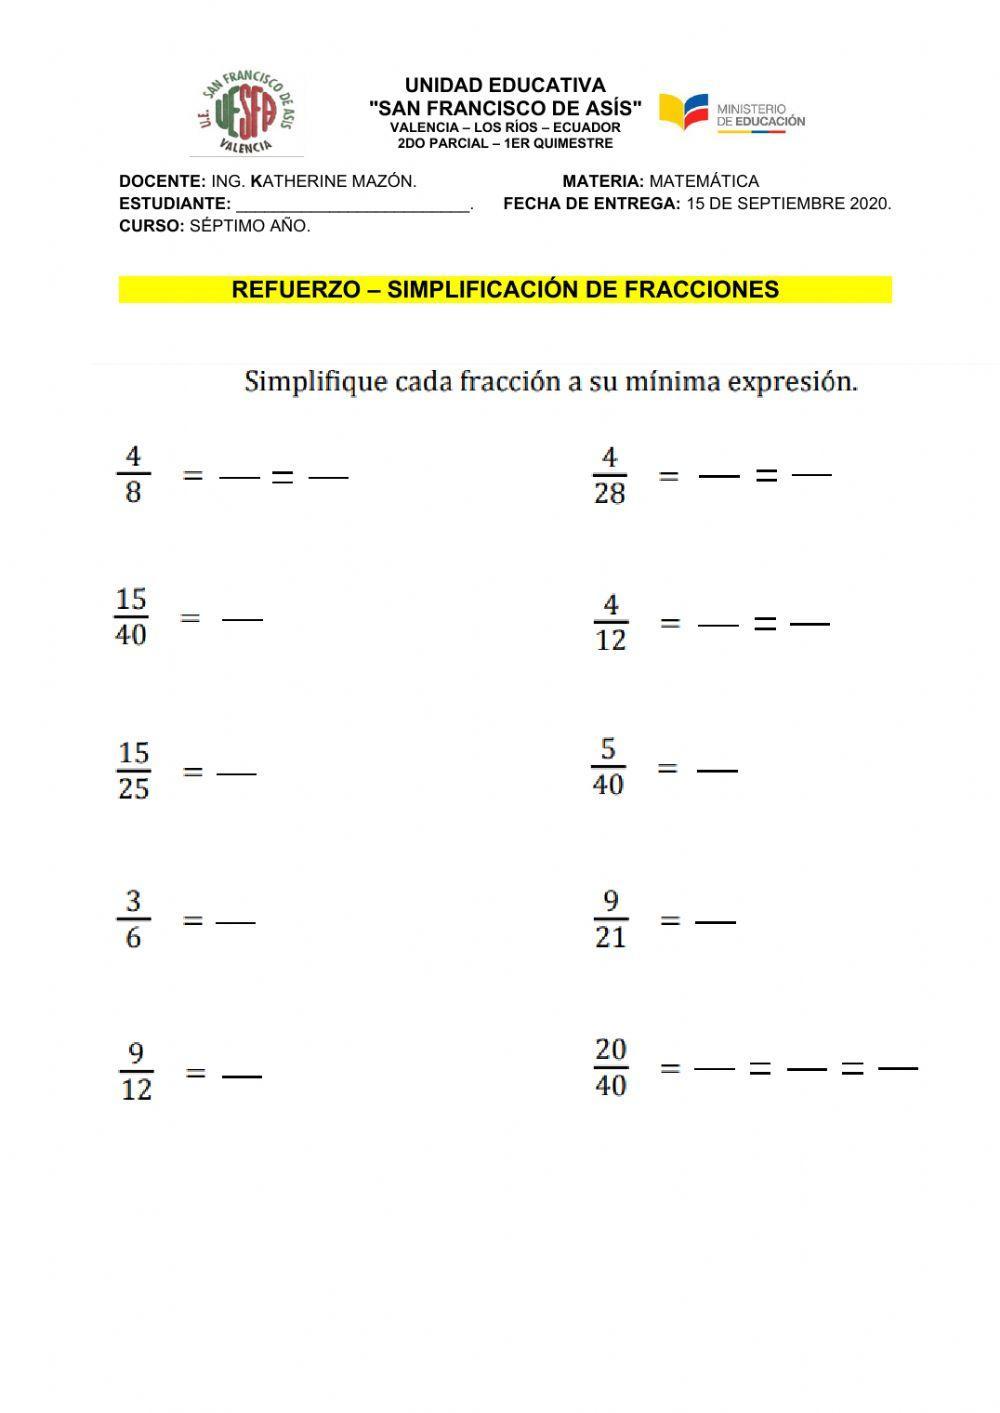 Simplificar Fracciones interactive activity